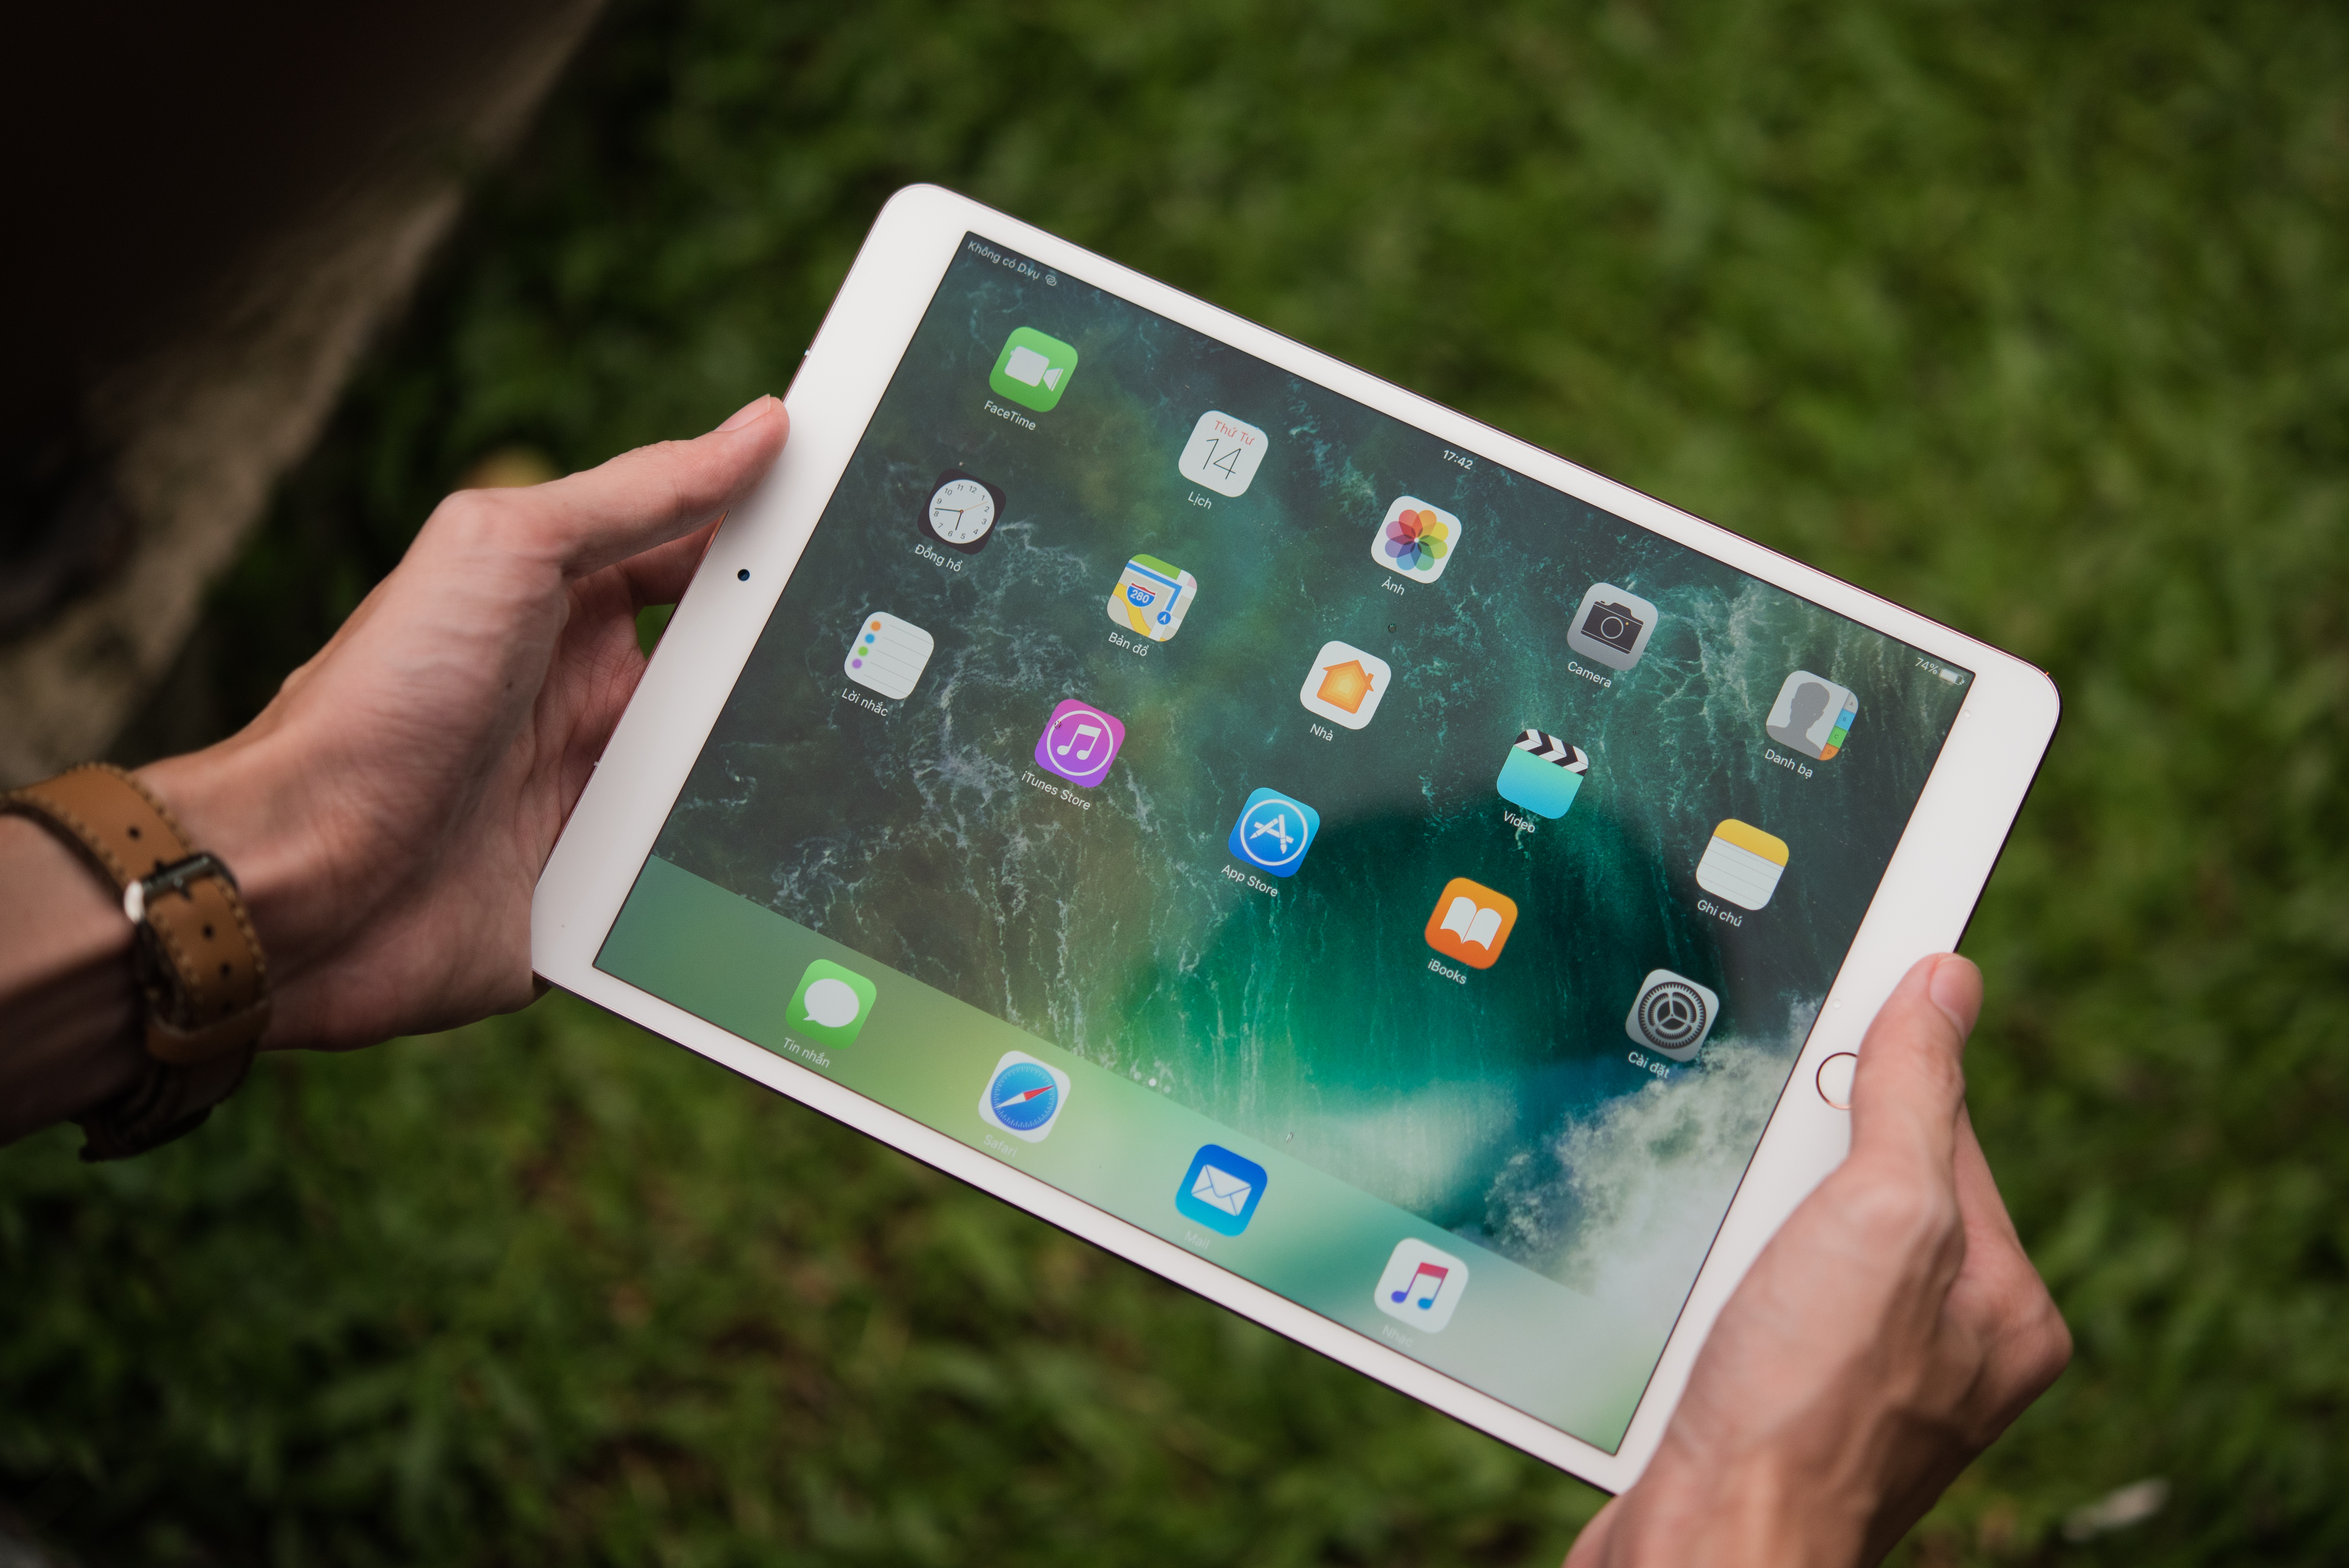 Una fotografía muestra a una persona sosteniendo un iPad pro. Hay widgets y aplicaciones coloridos en la pantalla.